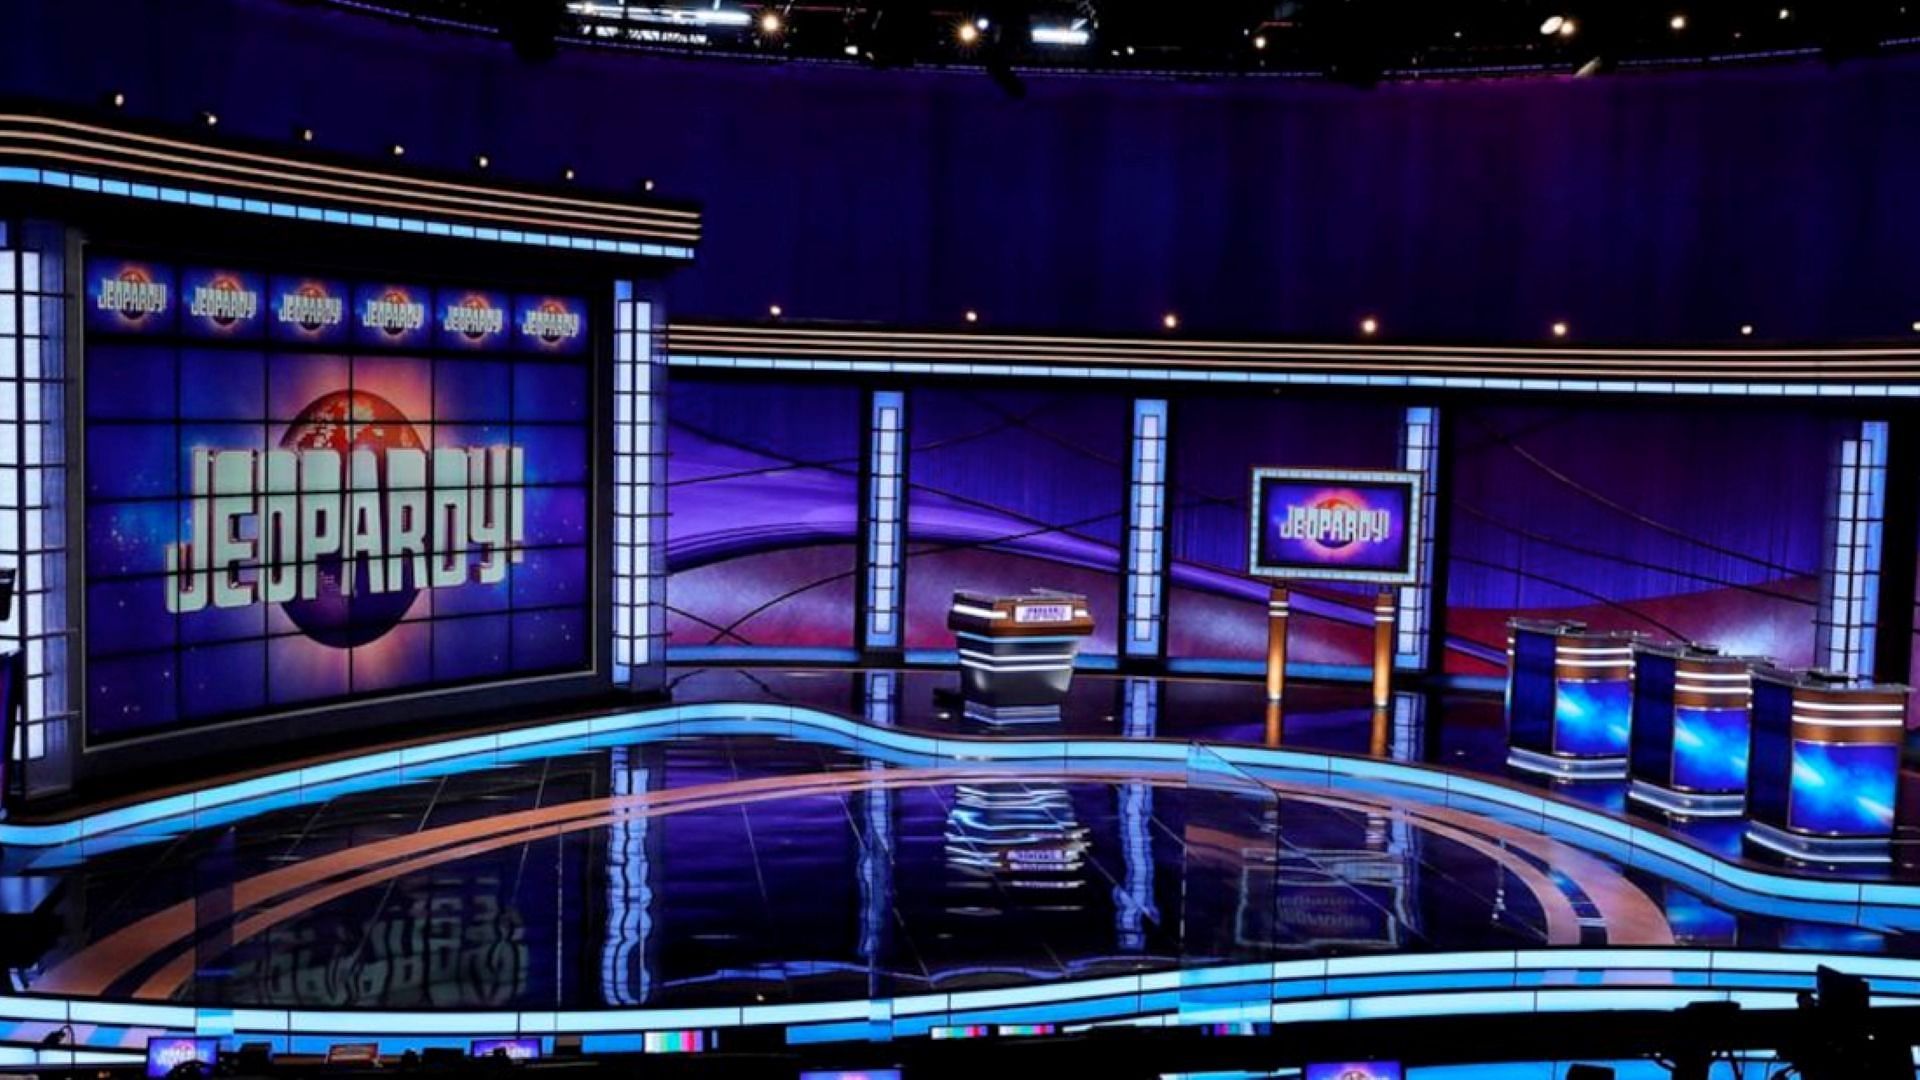 The set of Jeopardy! (Image via @Jeopadry/Instagram)